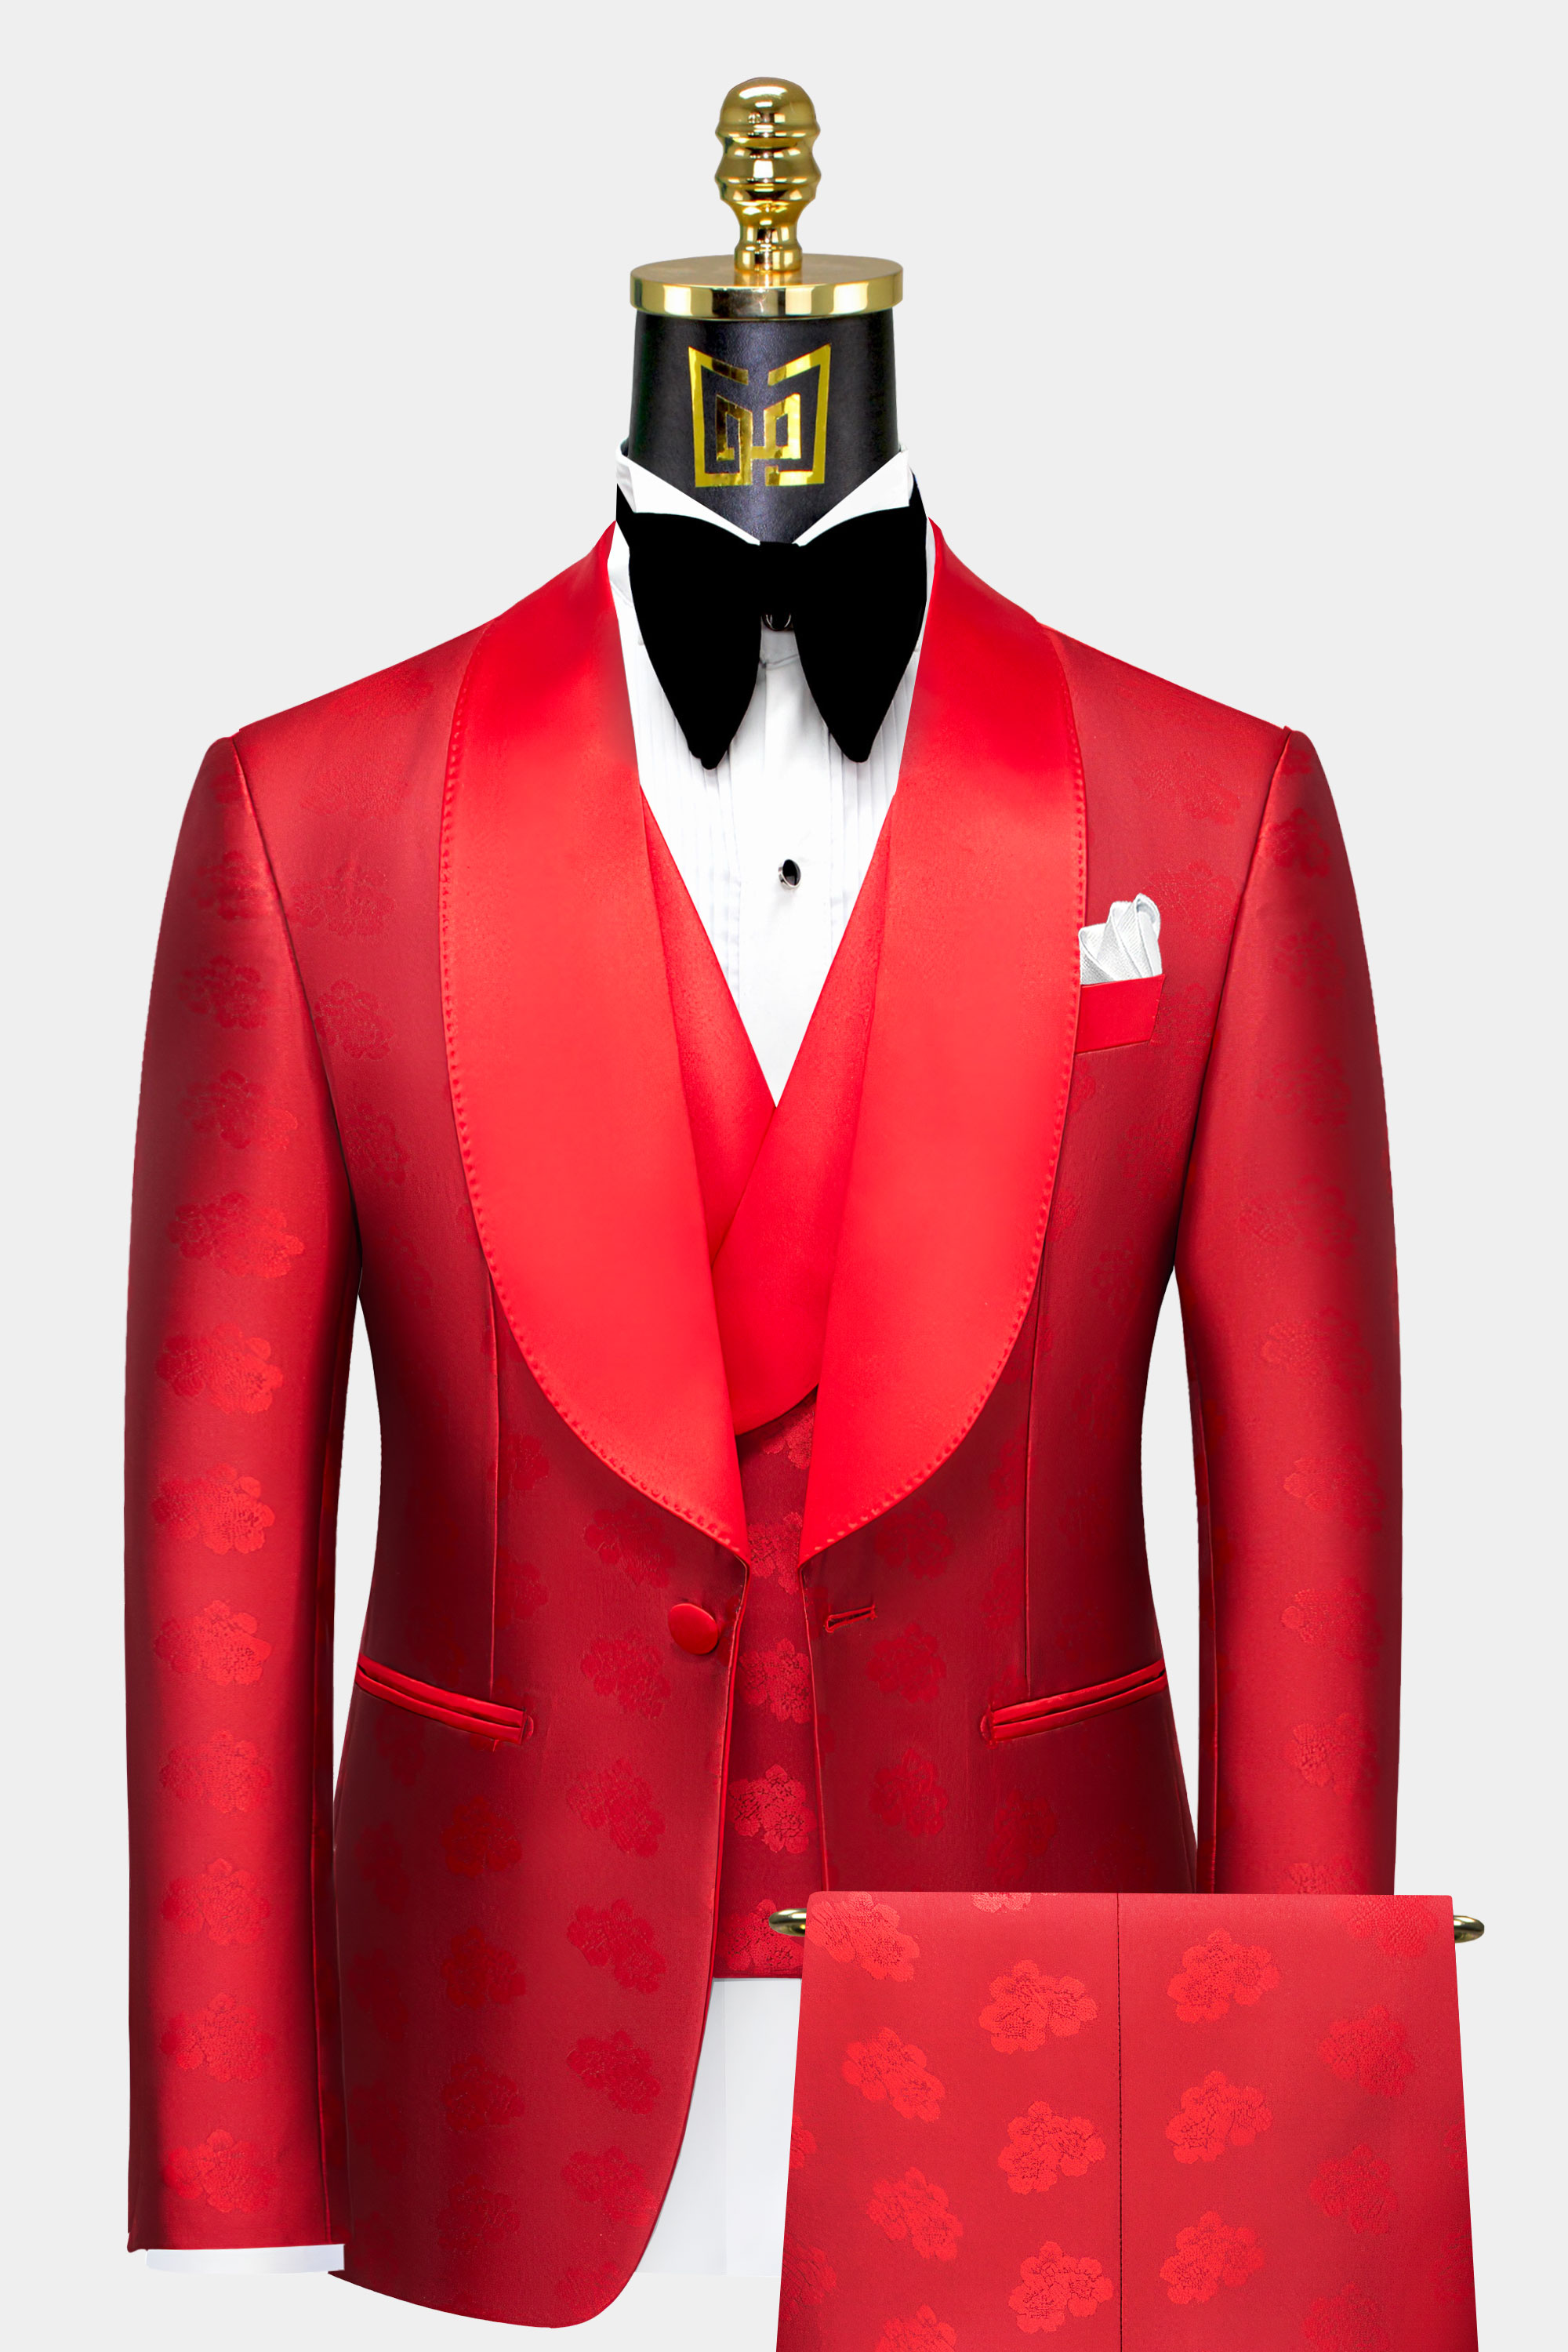 Mens-All-Red-Tuxedo-Suit-Groom-Wedding-Prom-Suit-from-Gentlemansguru.com